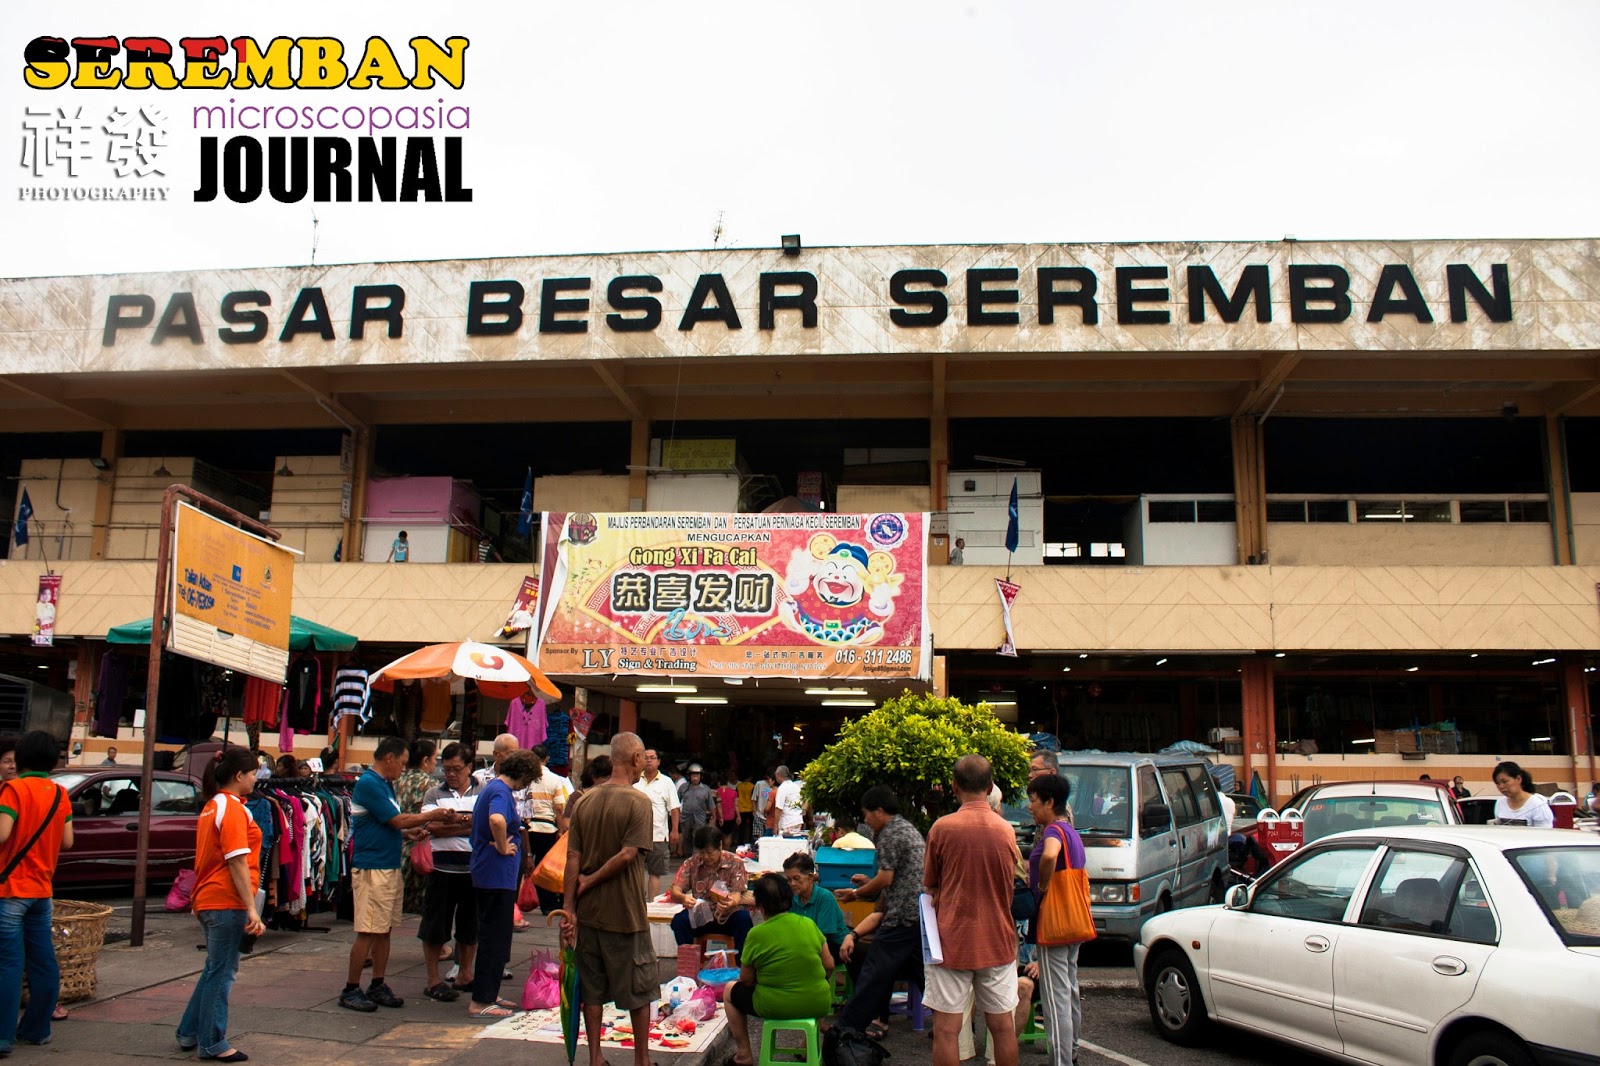 Ho Chiak! moment at Pasar Besar Seremban, Negeri Sembilan